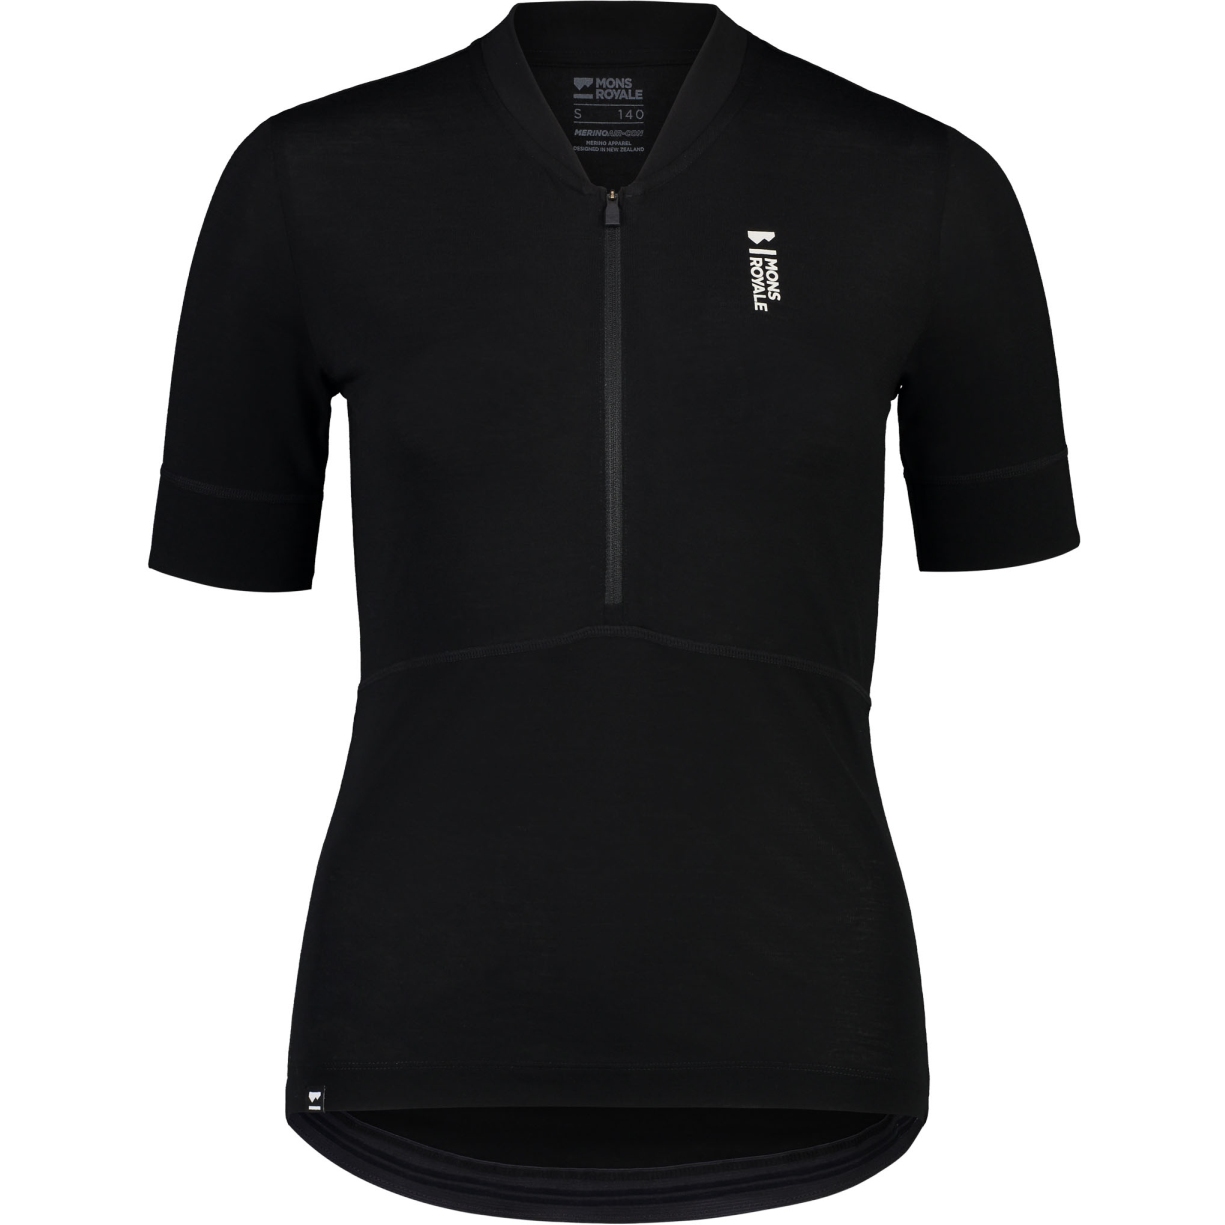 Produktbild von Mons Royale Cadence Merino Air-Con Half Zip T-Shirt Damen - schwarz